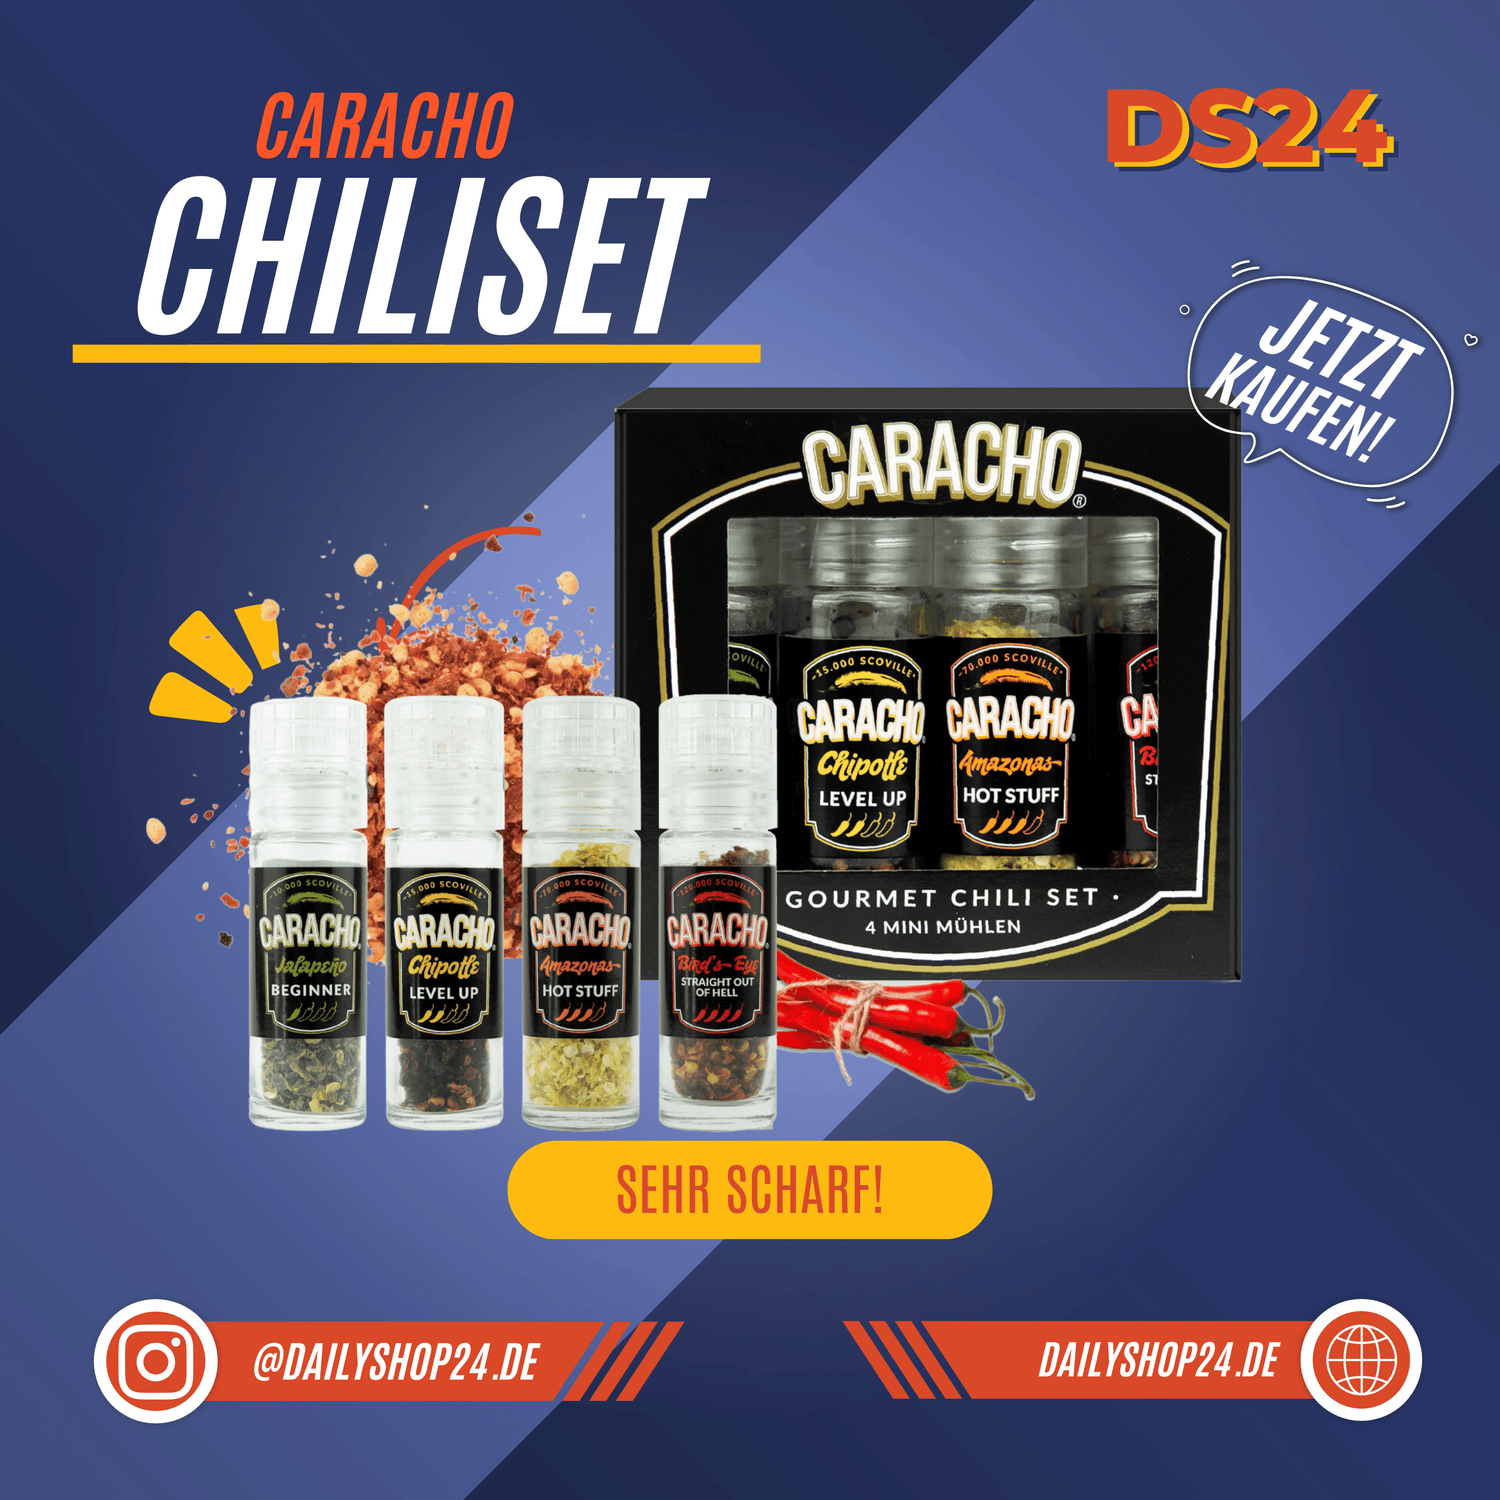 Dailyshop24 Produktbild für CARACO Minimühlen das Verpackung die Mühlen selbst und eine Chilischote und den Inhalt der Chili minimühlen zeigt 